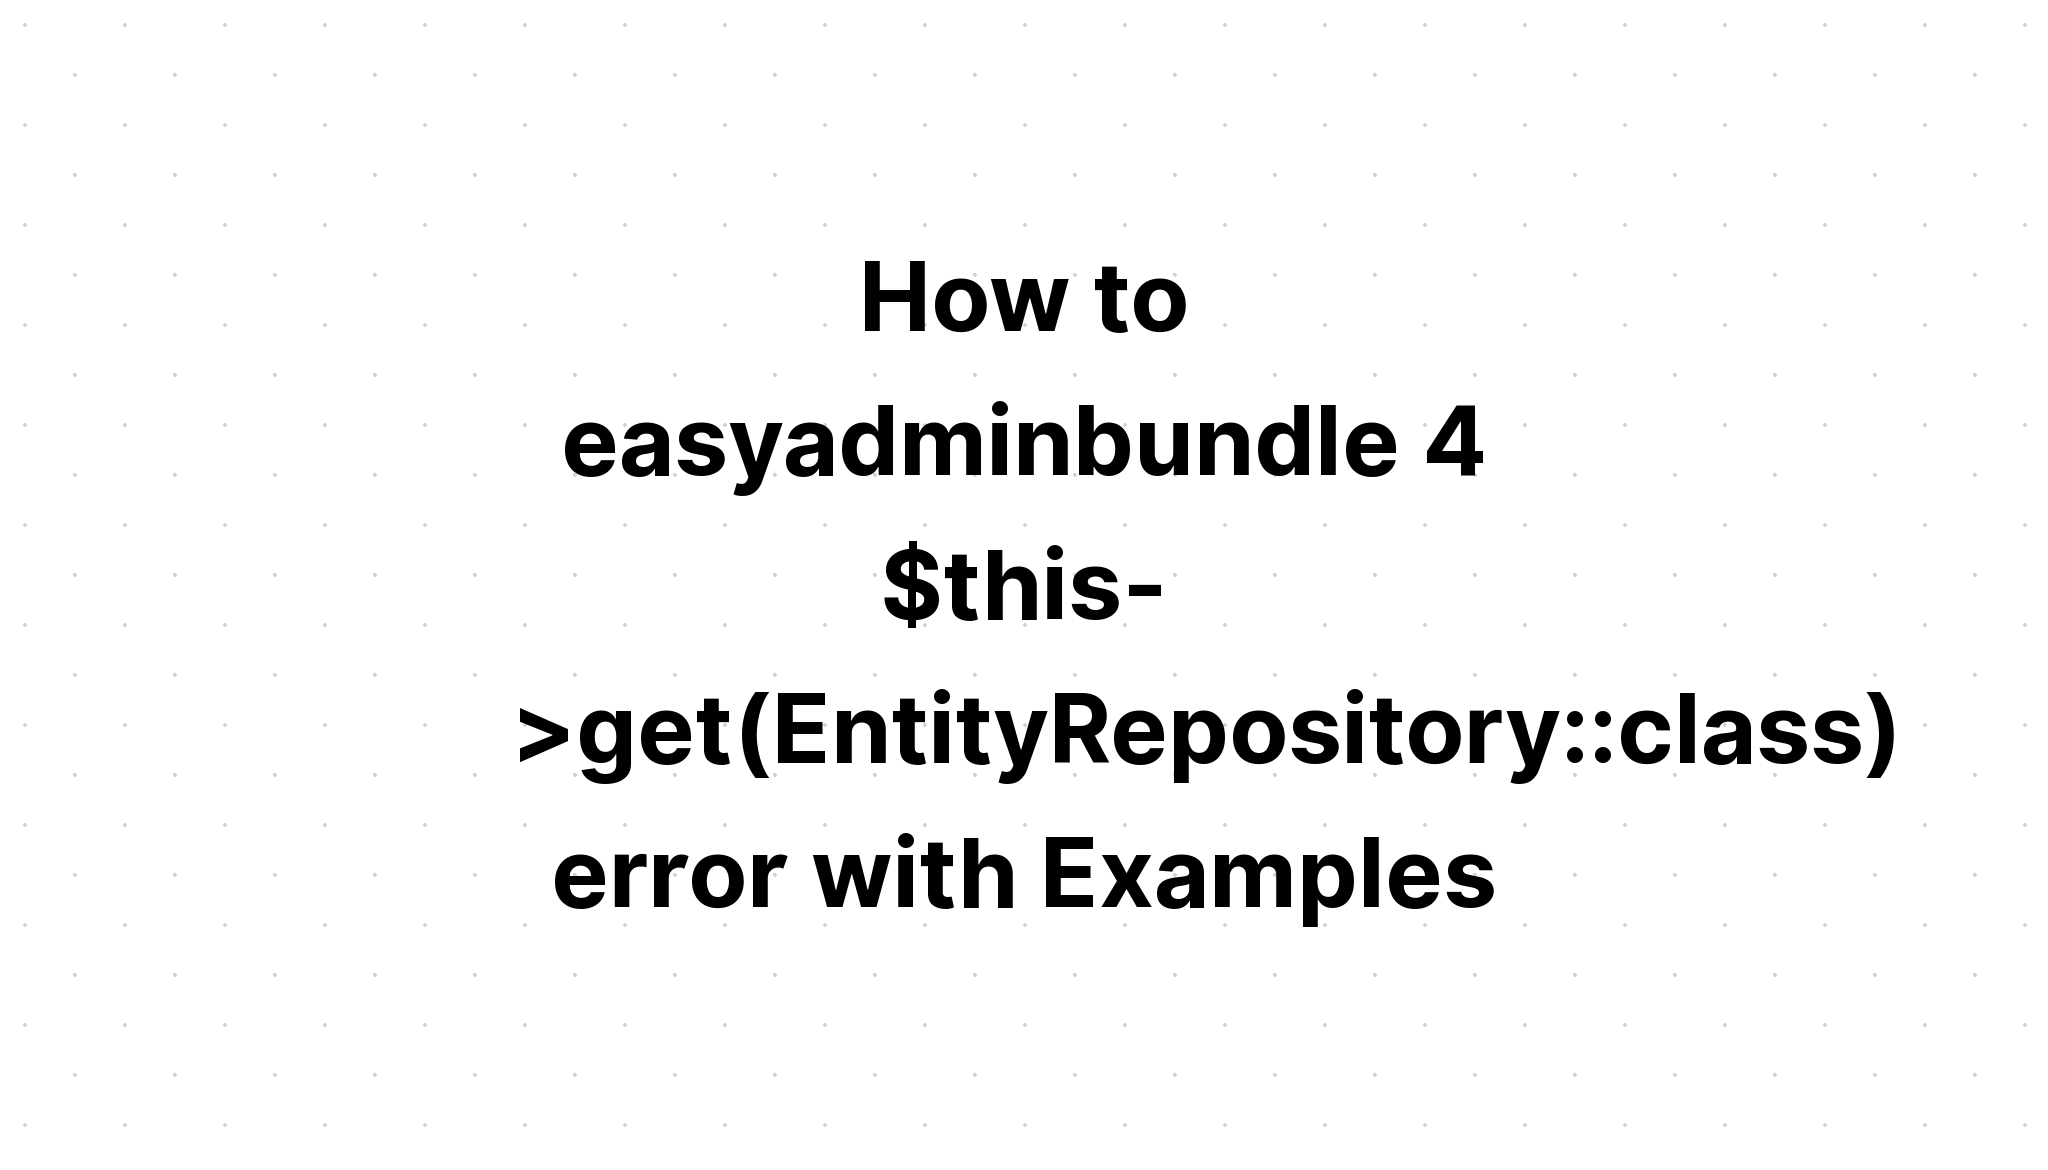 Cách easyadminbundle 4 $this->get(EntityRepository. class) với các ví dụ